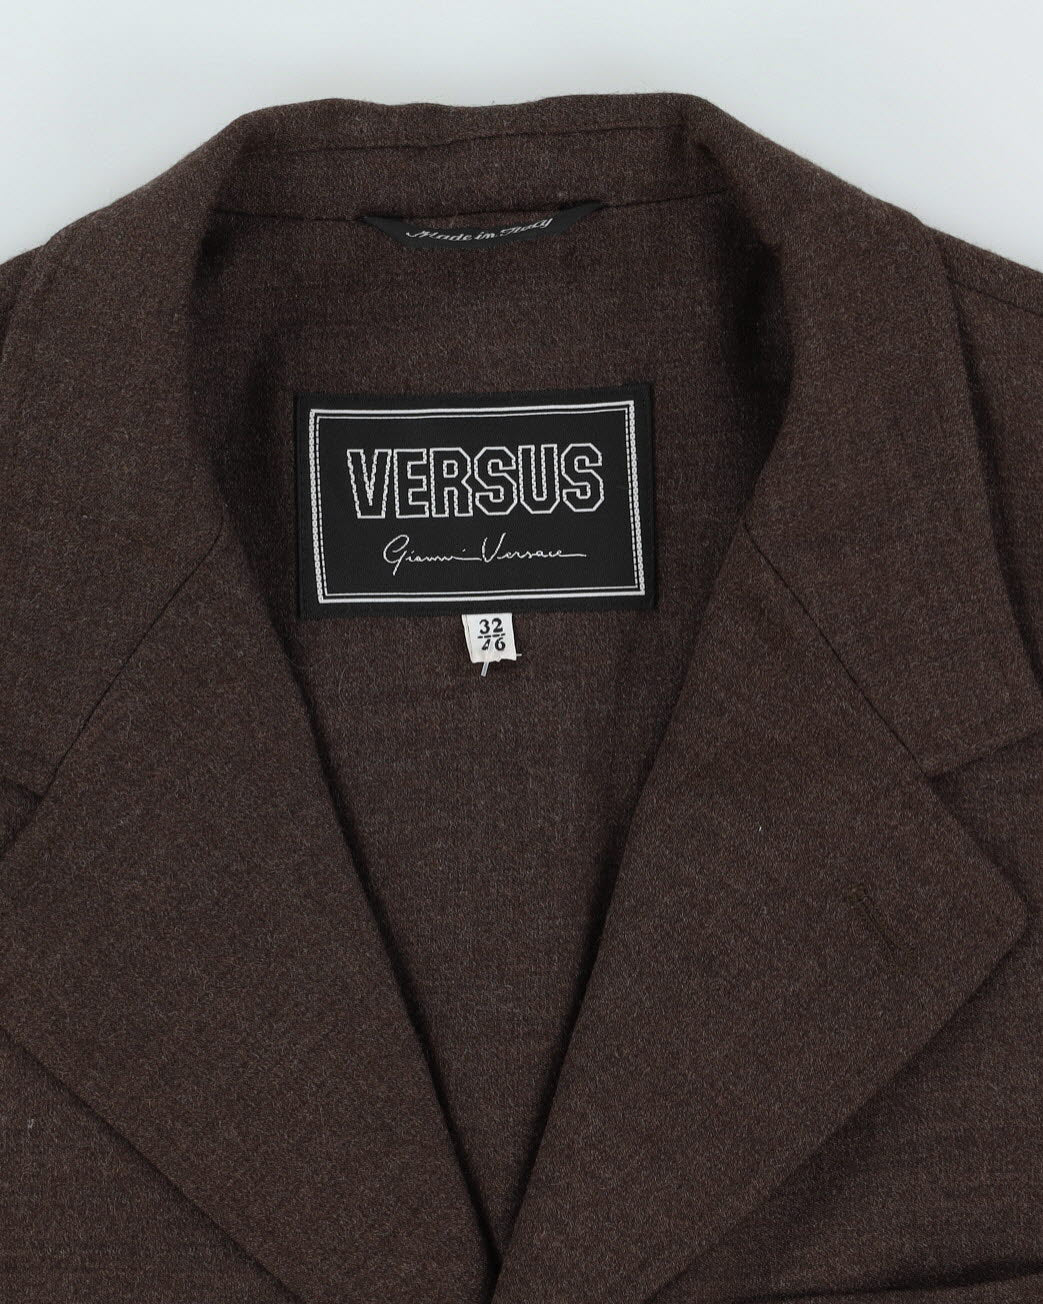 Gianni Versace Versus Brown Blazer Jacket - S